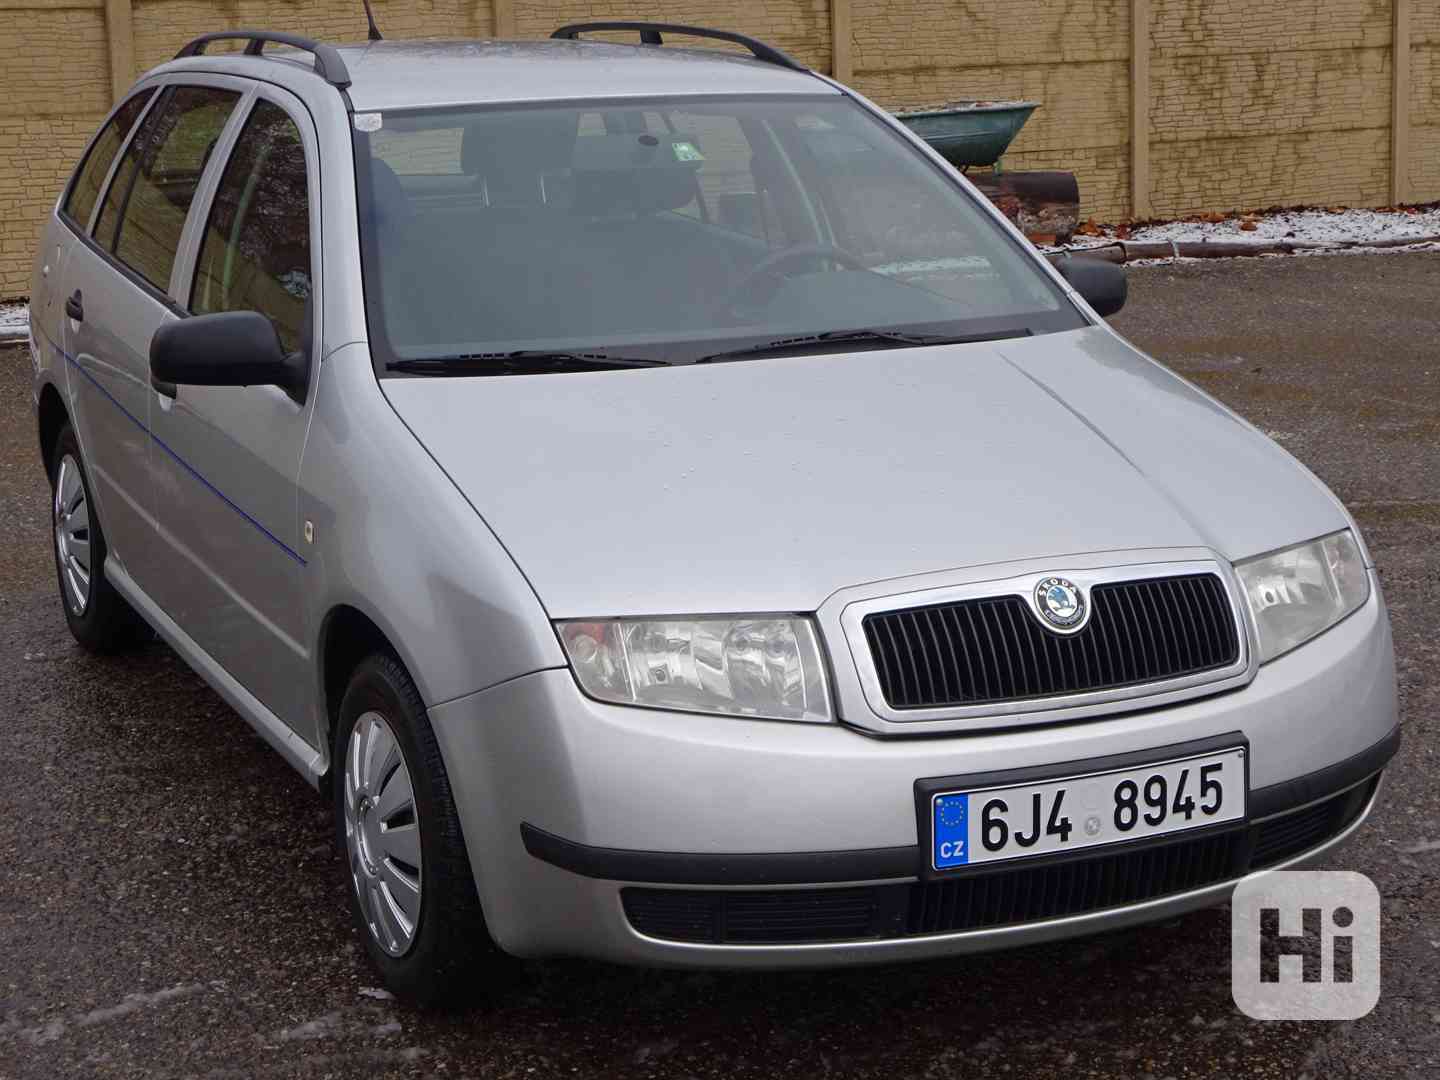 Škoda Fabia 1.9 SDI Combi r.v.2002 KLIMA (STK:1/2024) - foto 1